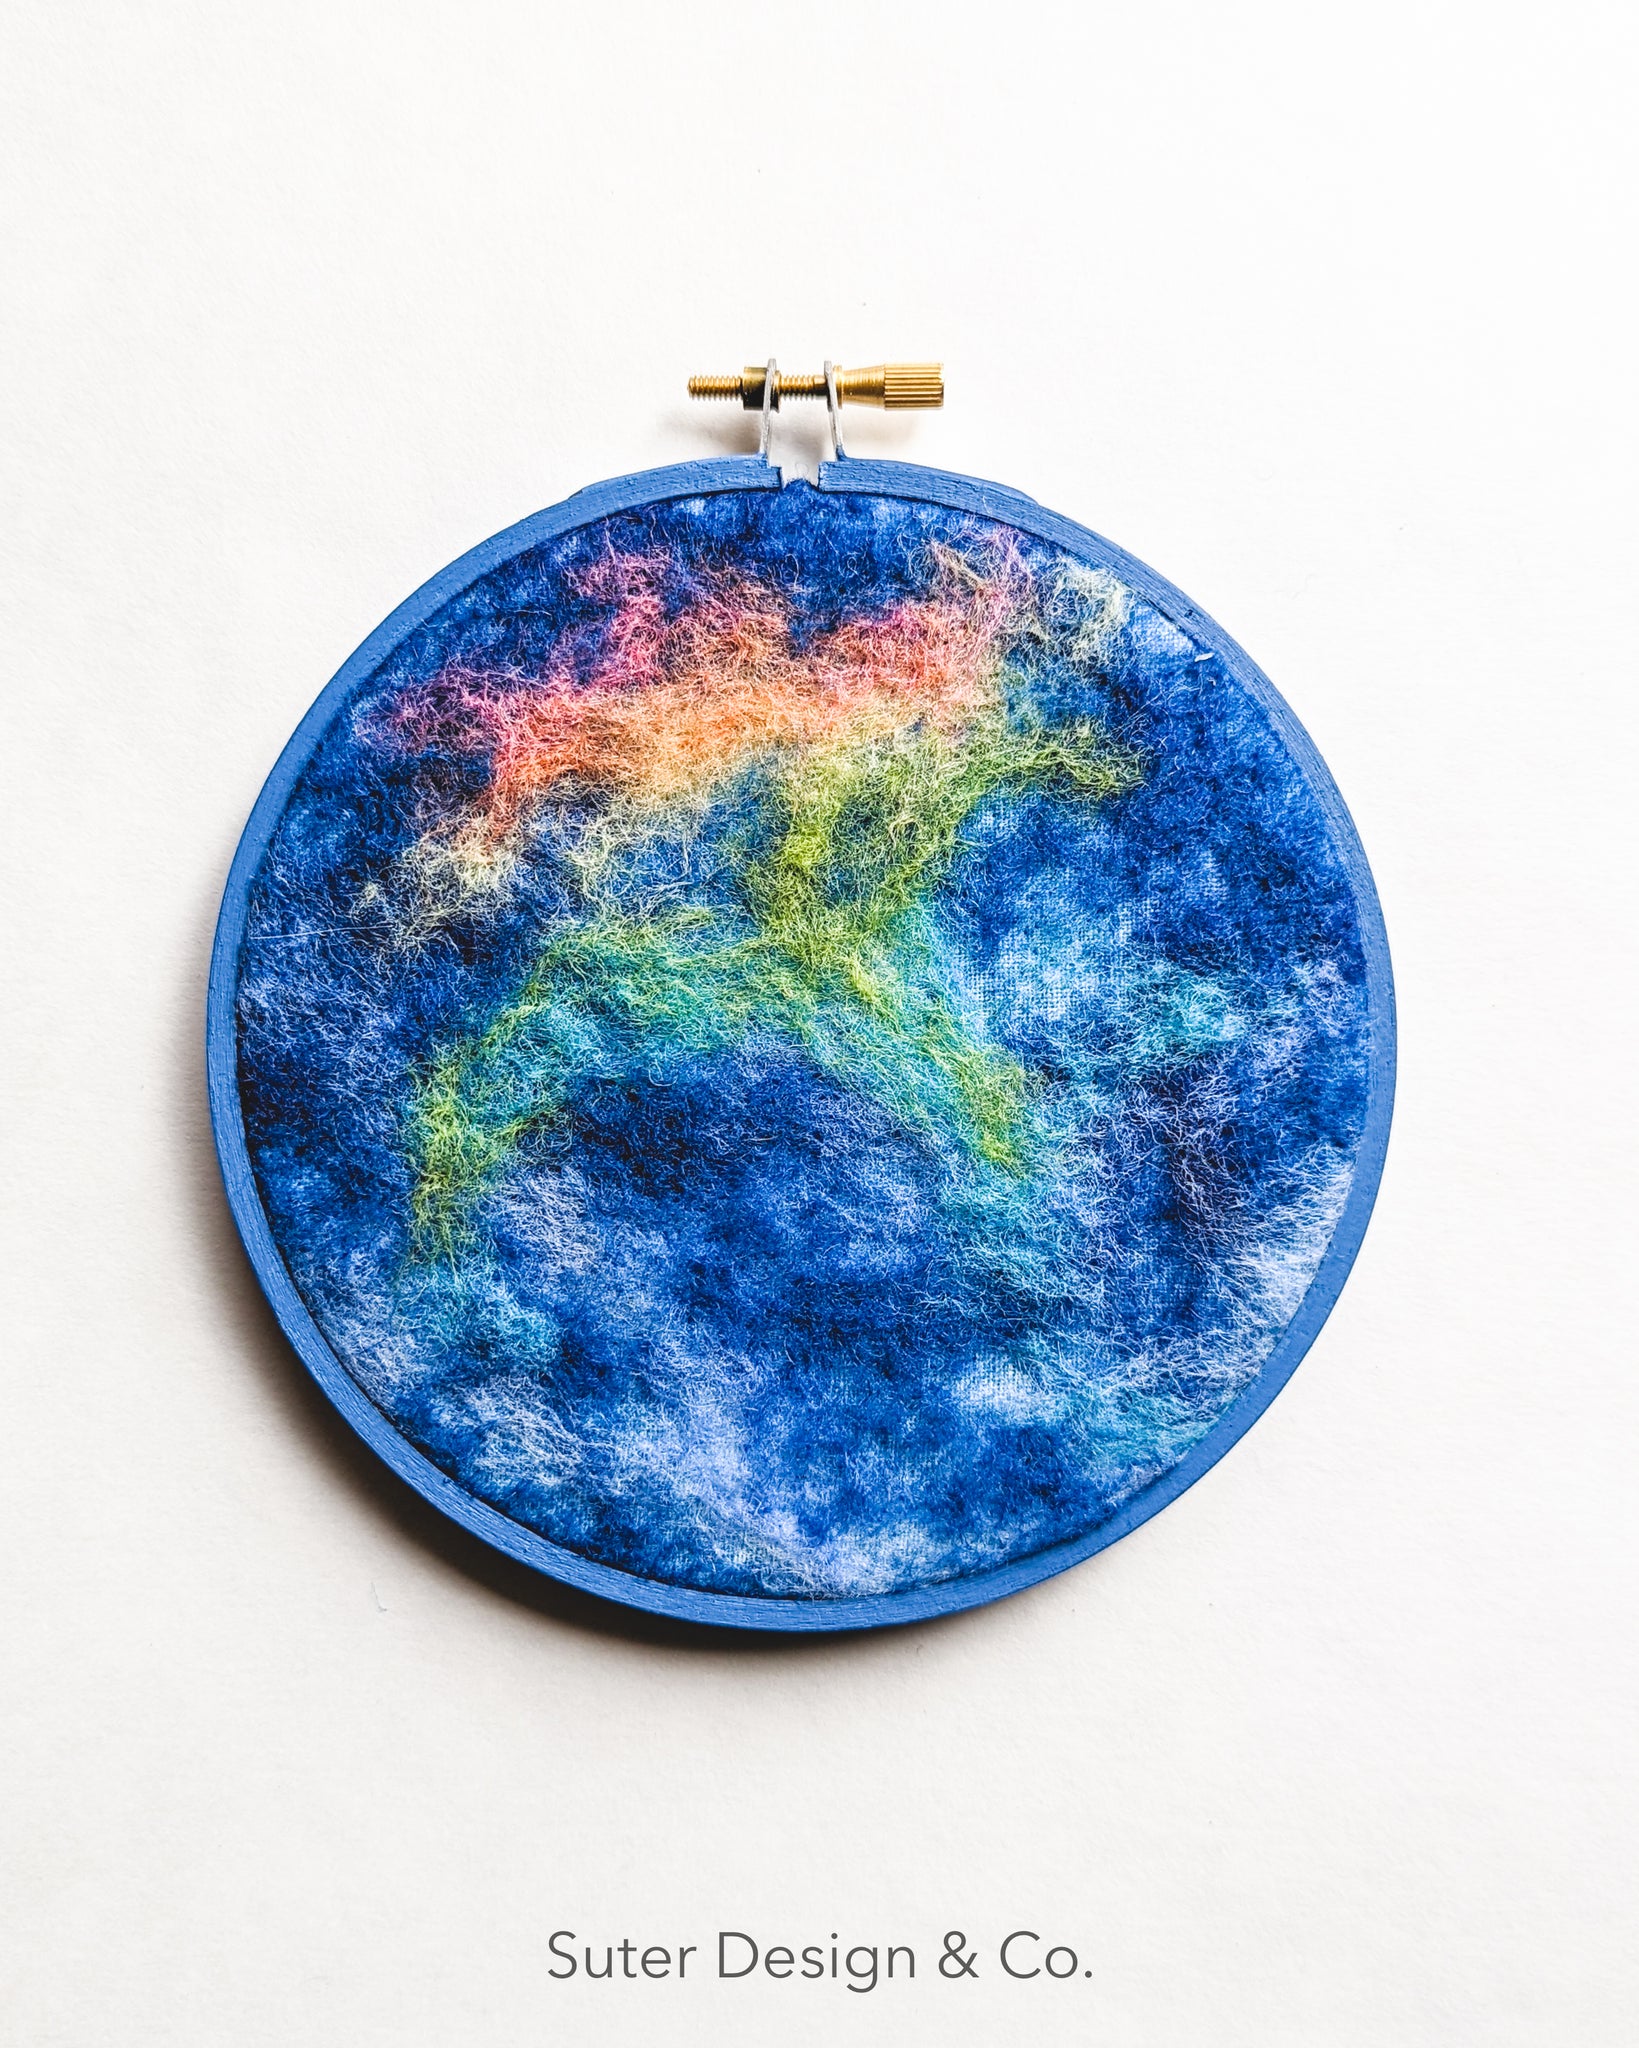 Fire Rainbow no. 4 - Serendipitous Clouds - 5 inch hoop art